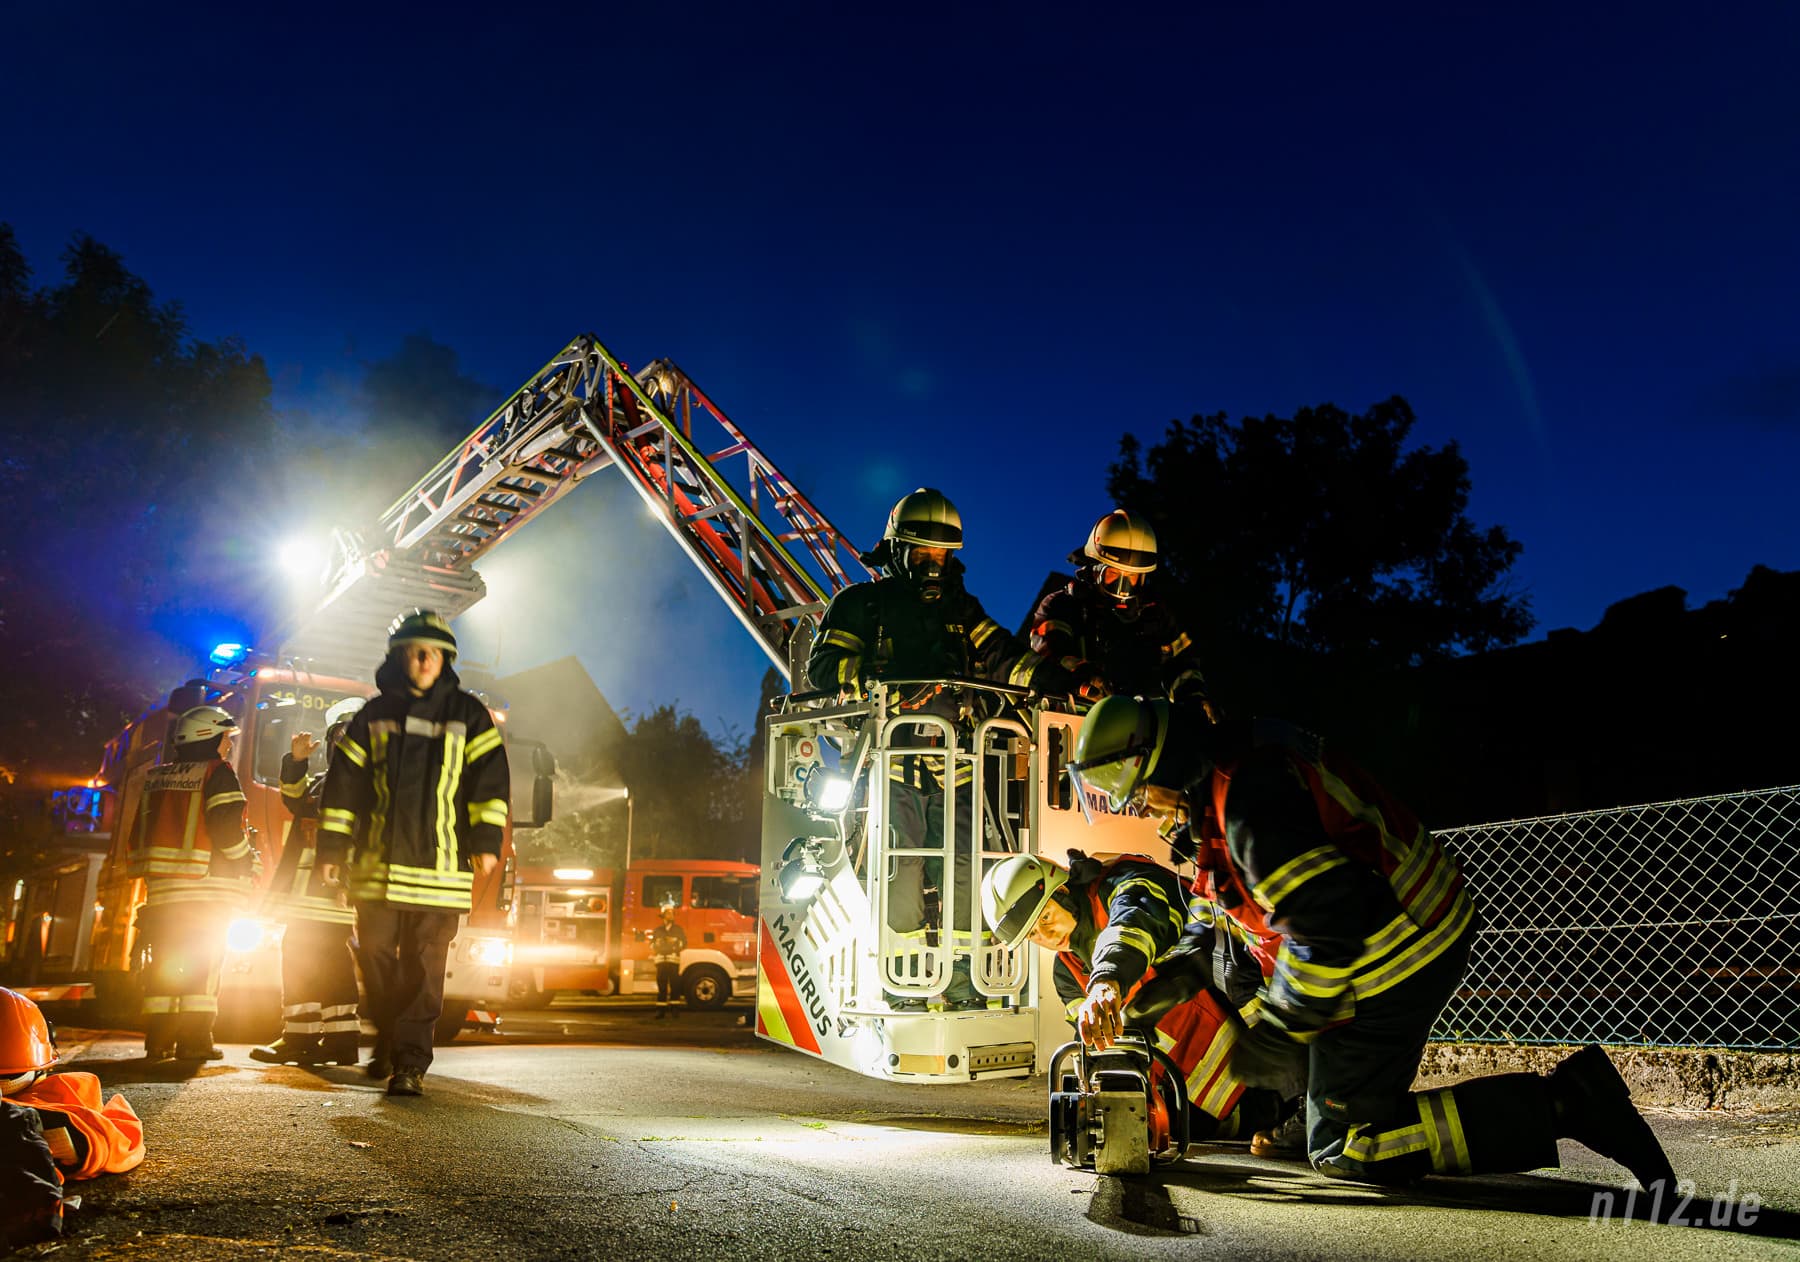 Feuerwehrleute bereiten eine spezielle Motorsäge zum Öffnen der Dachhaus vor (Foto: n112.de/Stefan Hillen)